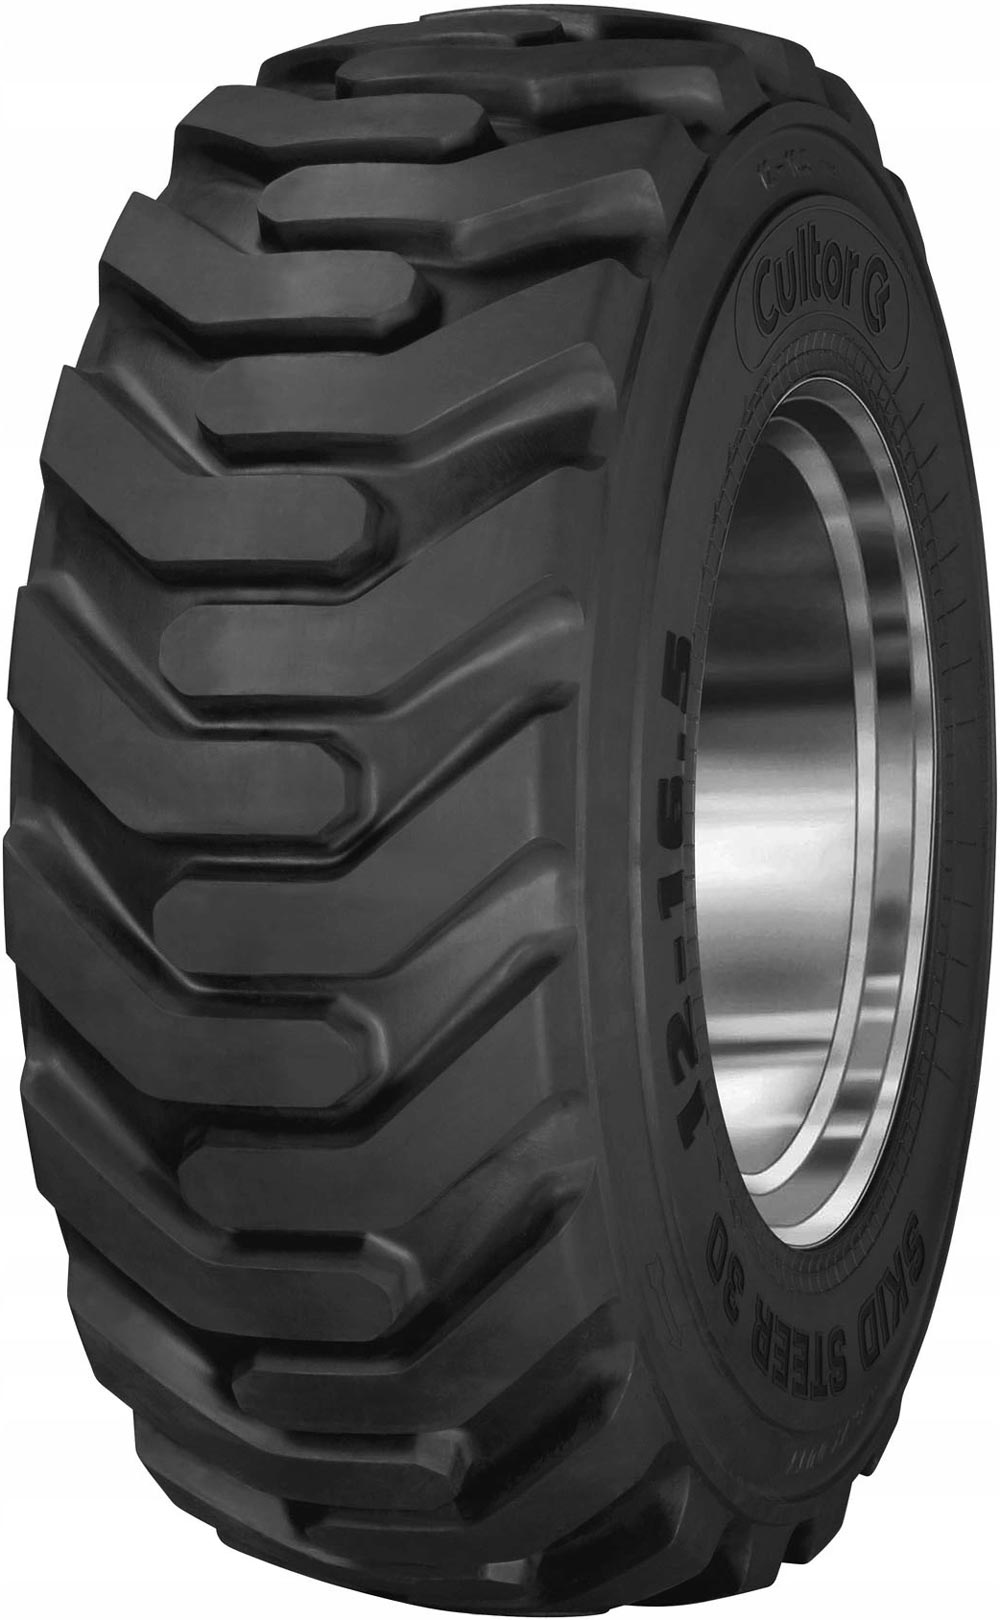 product_type-industrial_tires CULTOR SKID STEER 30 8PR TL 10 R16.5 P